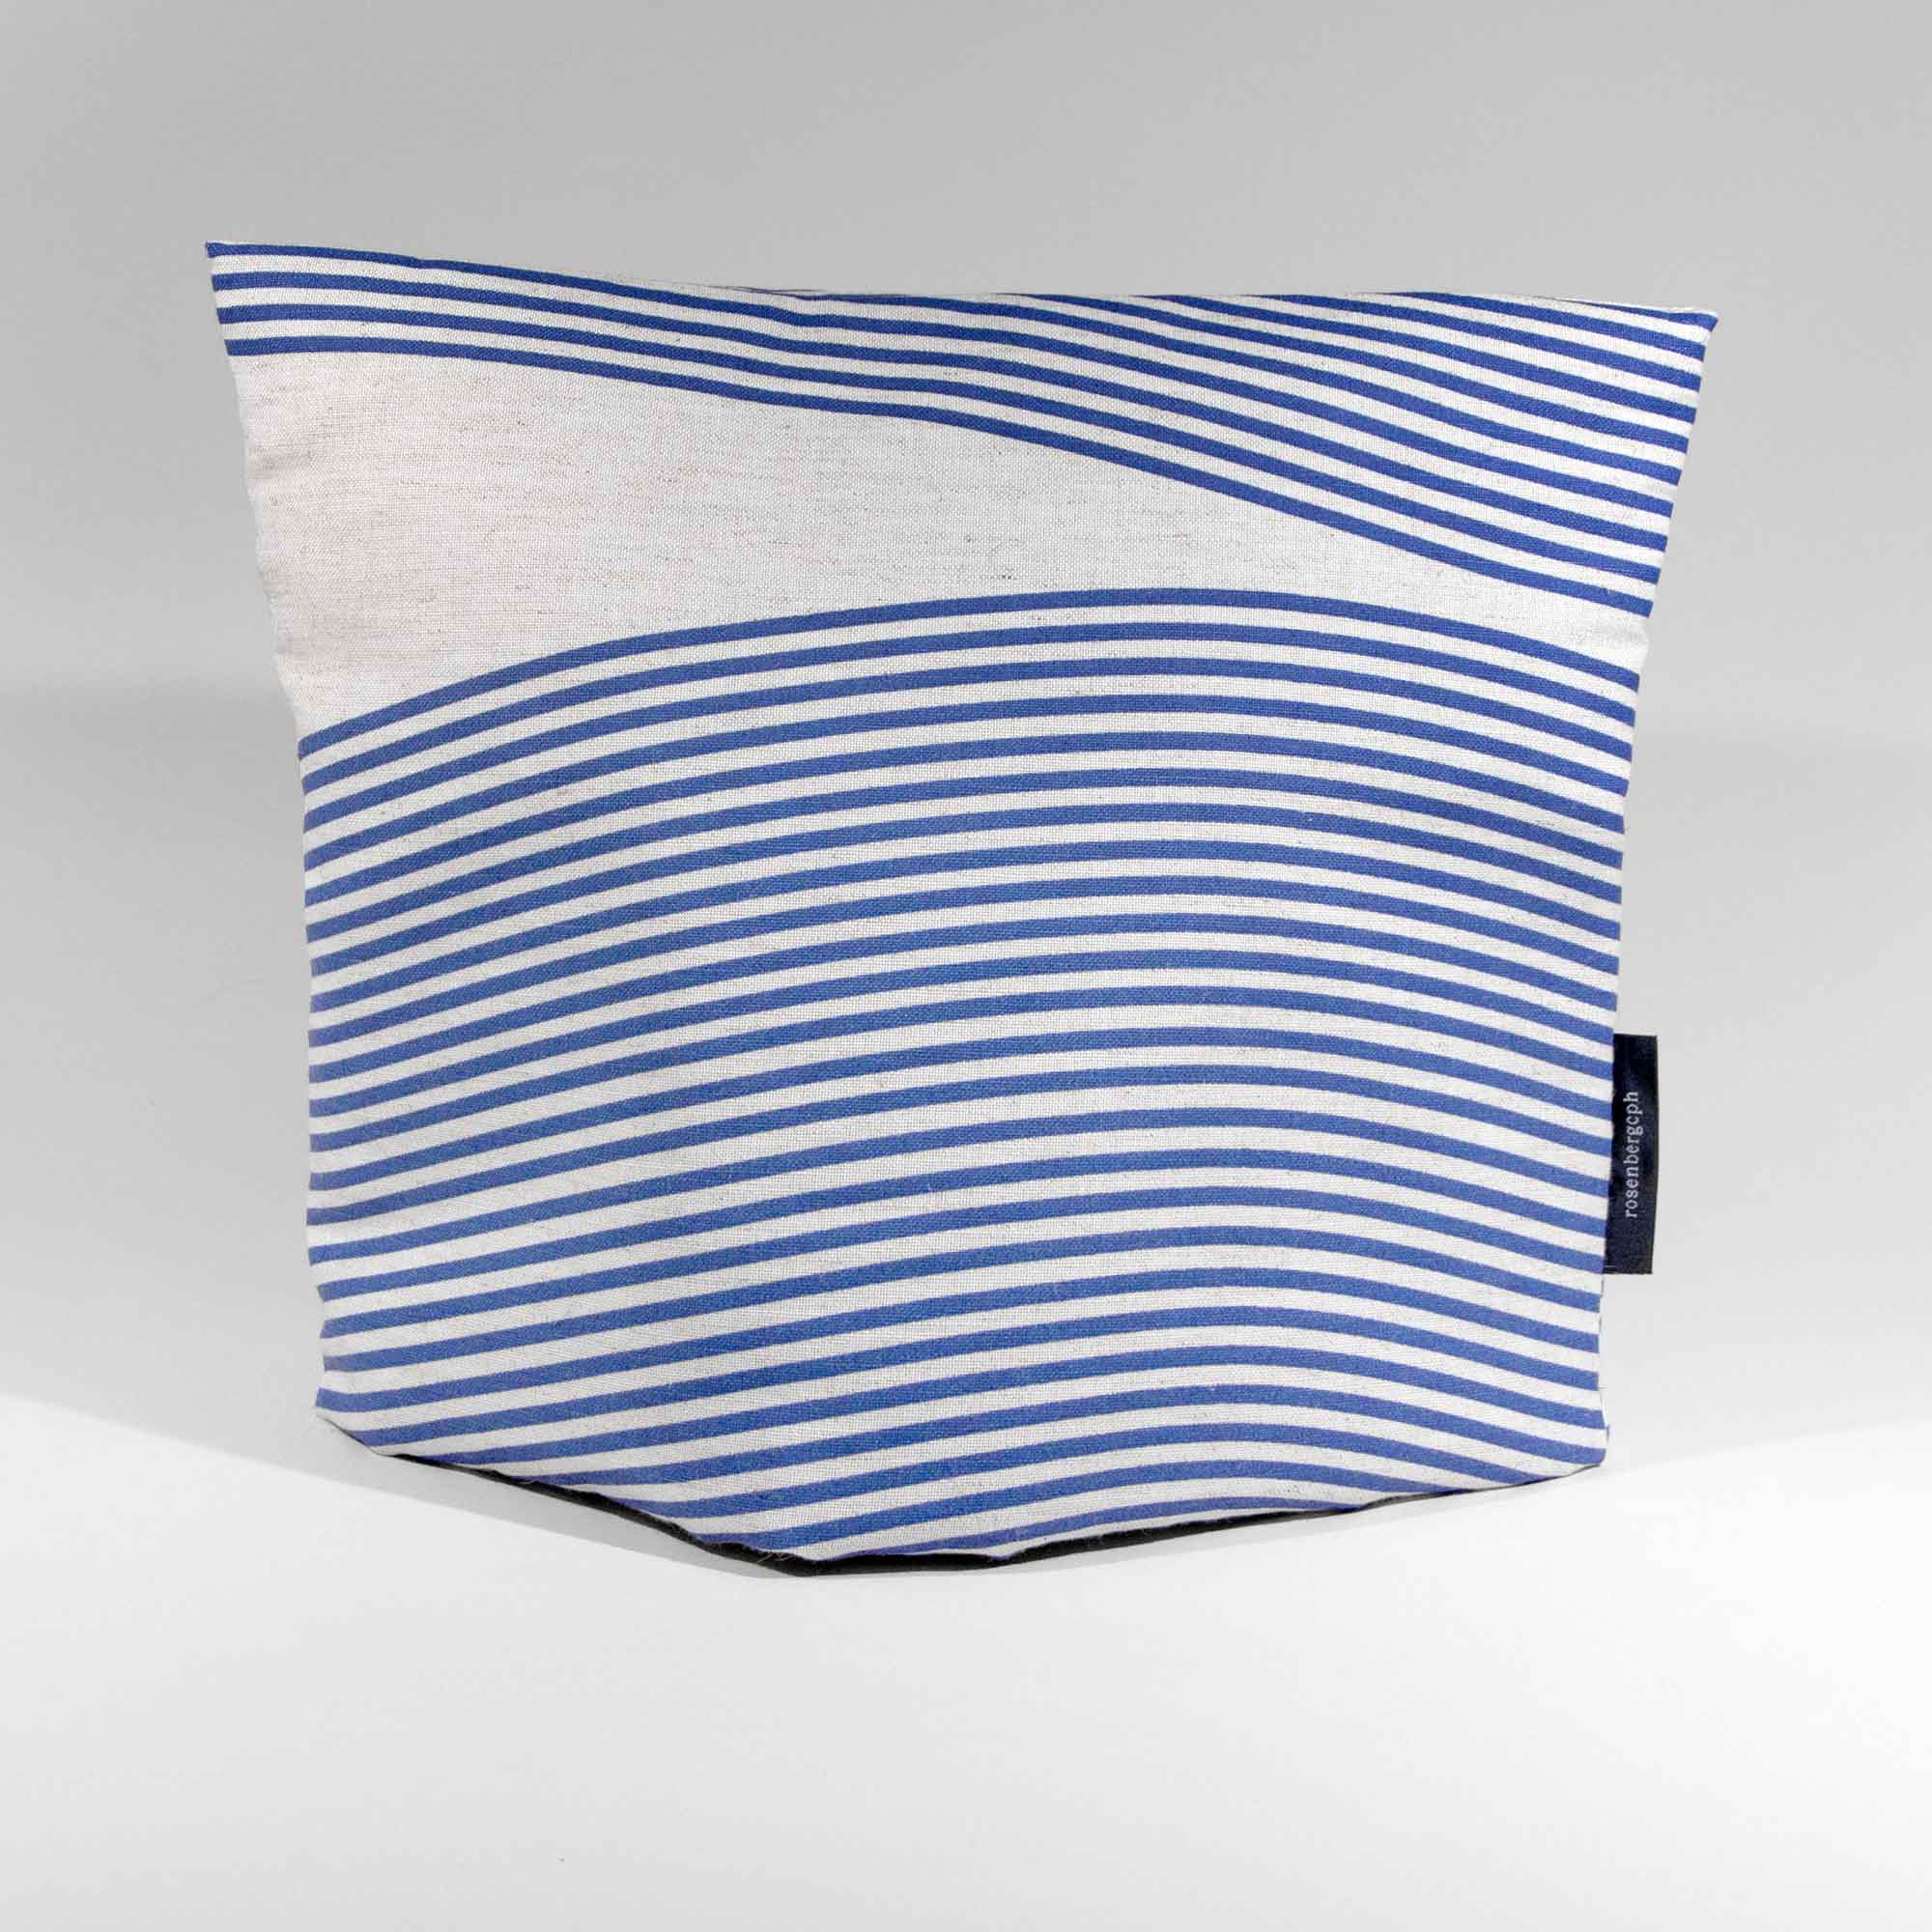 te hyggelig, flodblå, hør/polyester, design af Anne Rosenberg, RosenbergCph